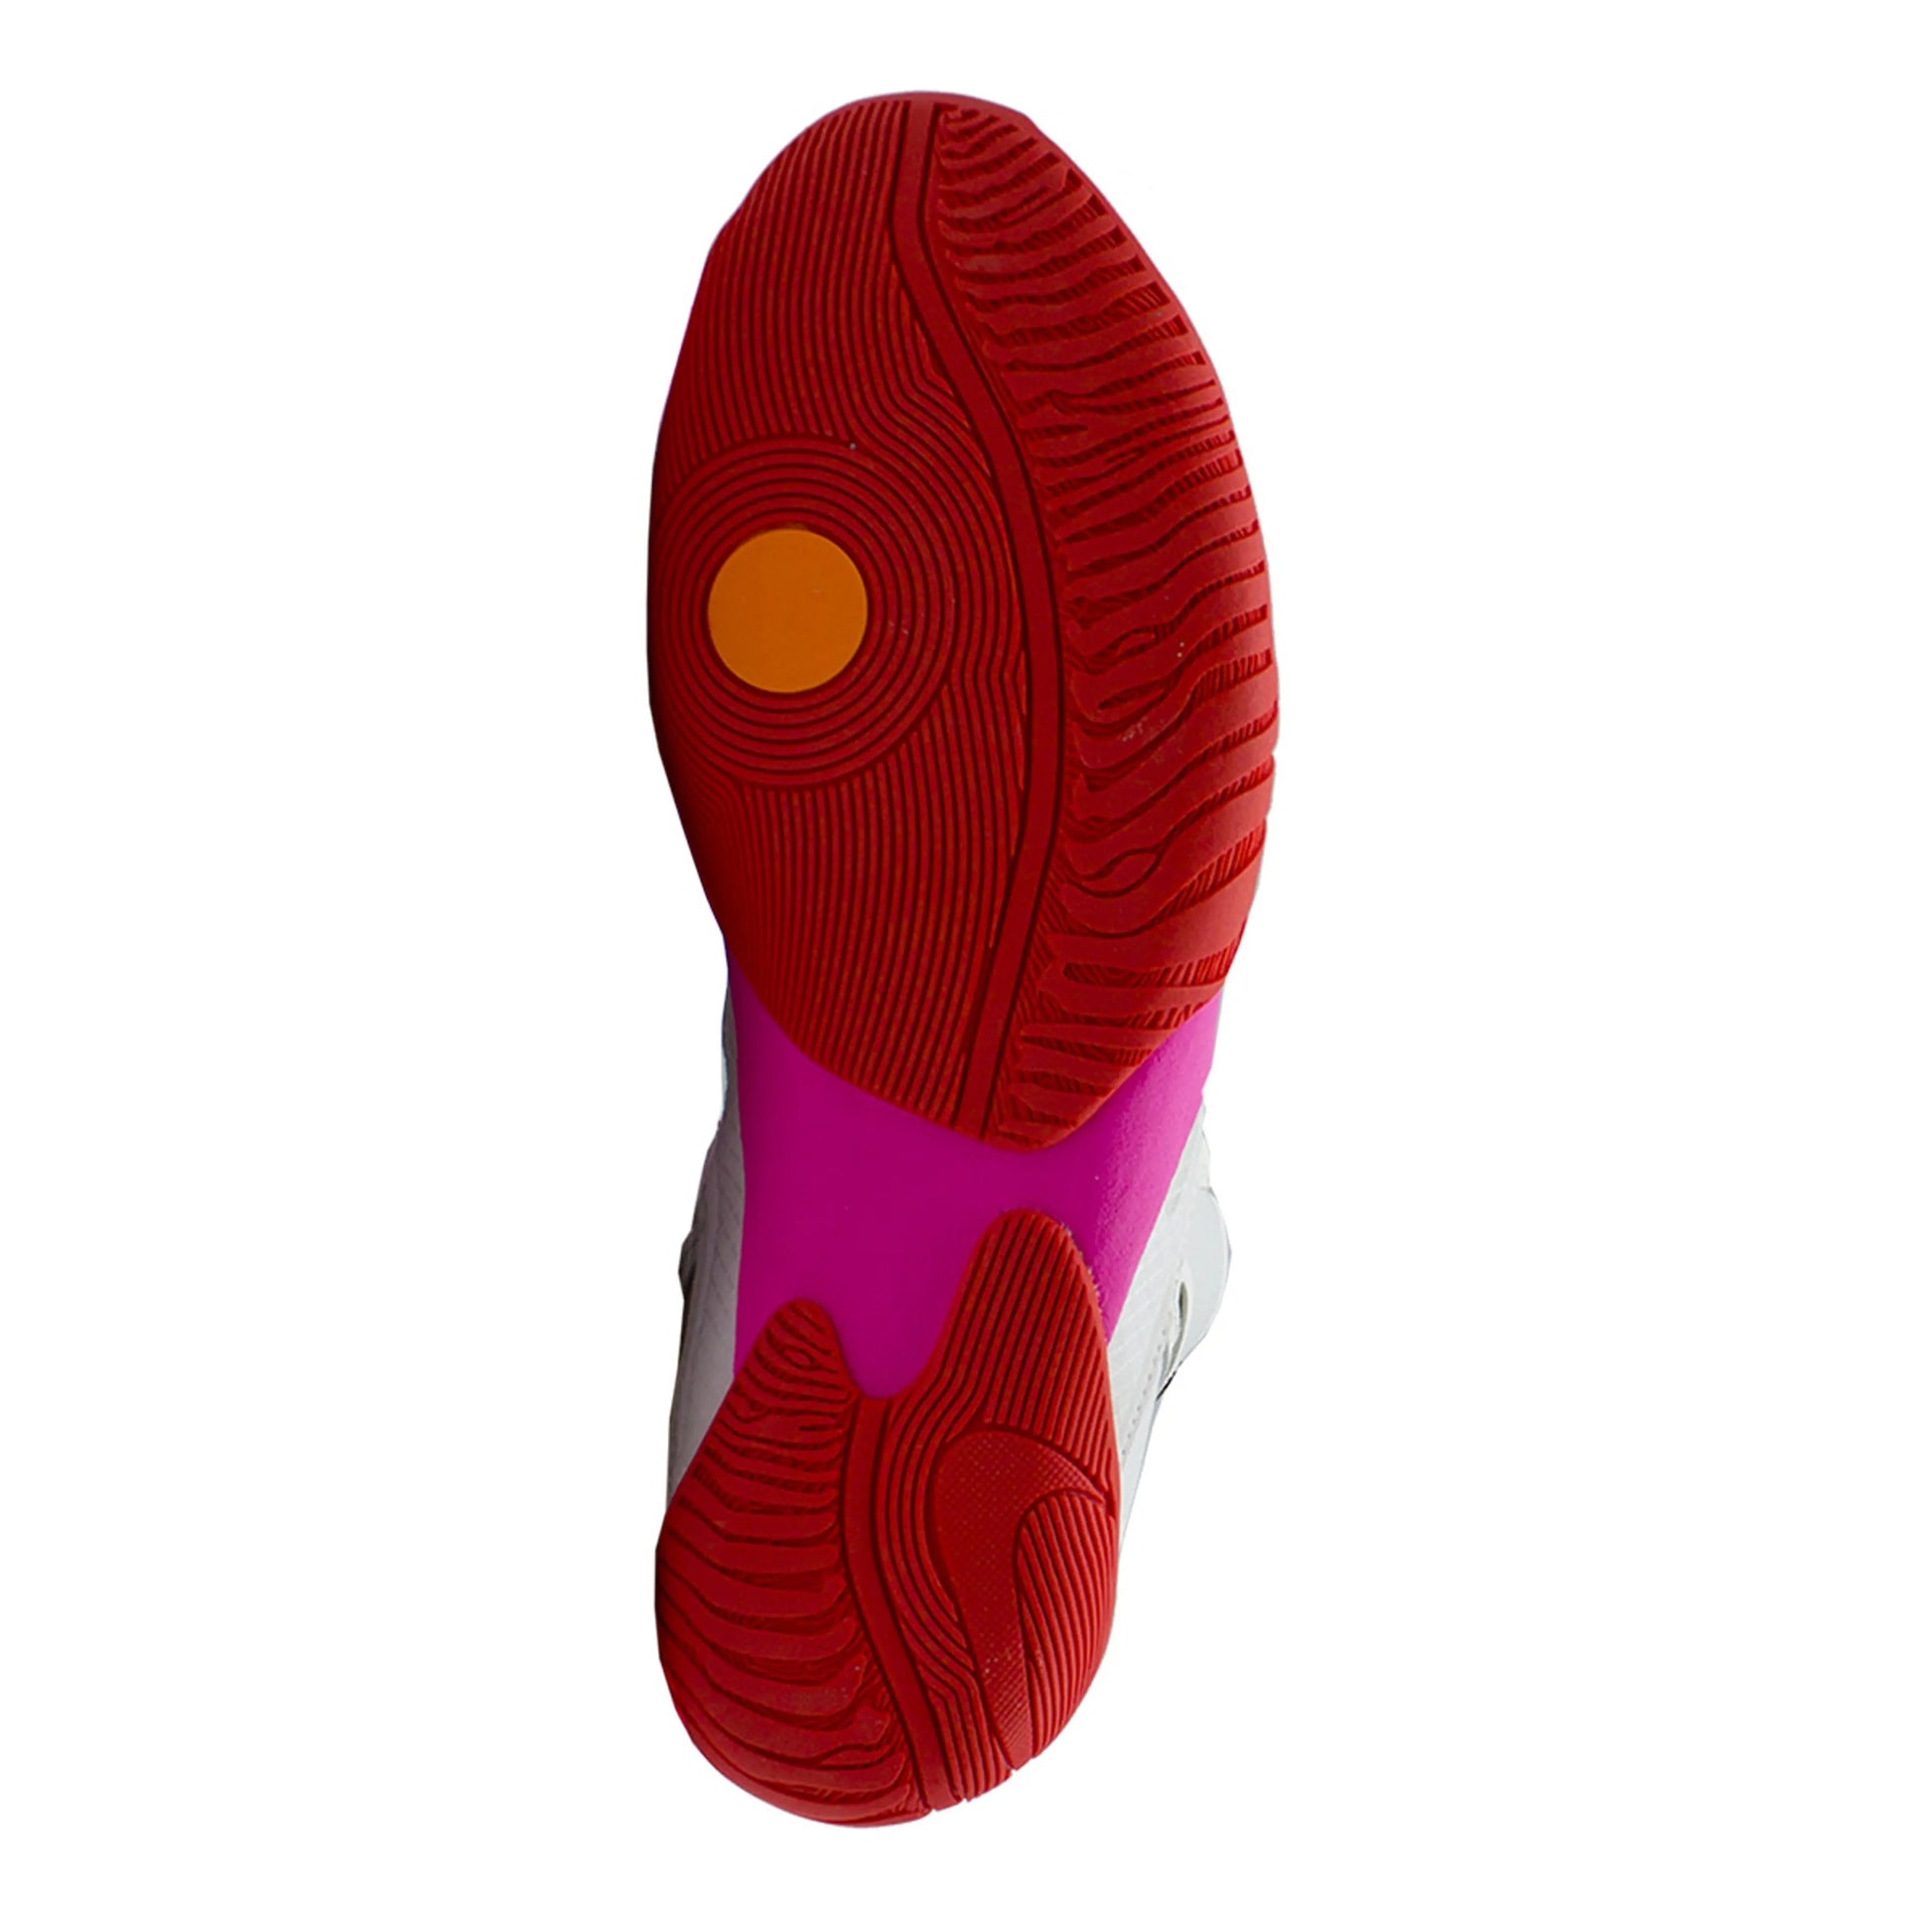 Botas de Boxeo Nike Hyperko 2 LE edición limitada - Redglove 